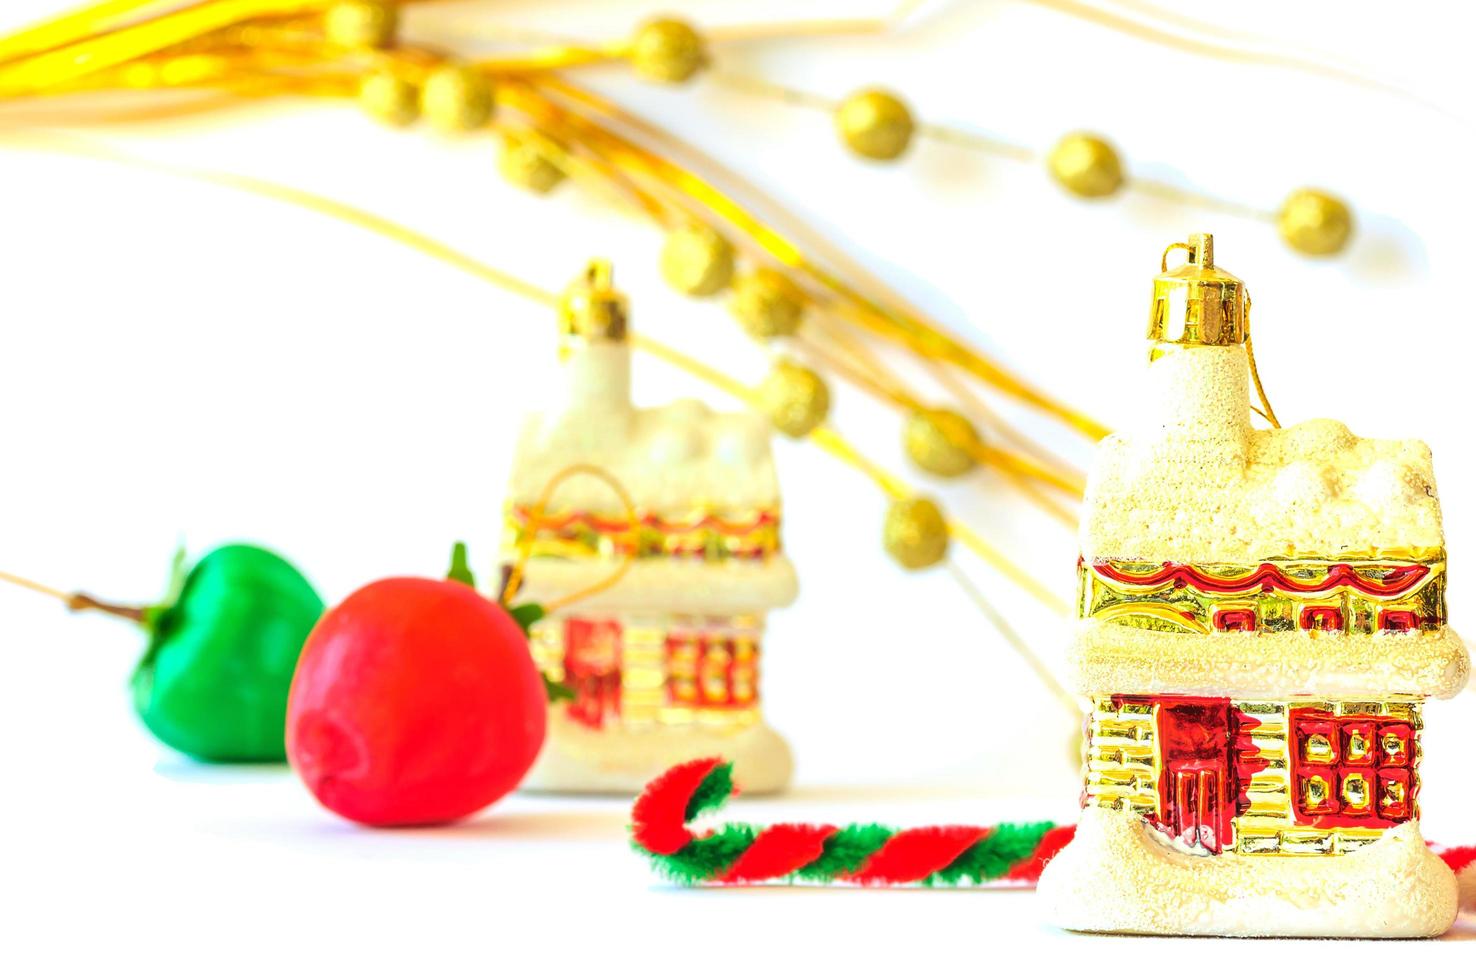 objetos de decoração de natal sobre fundo branco foto